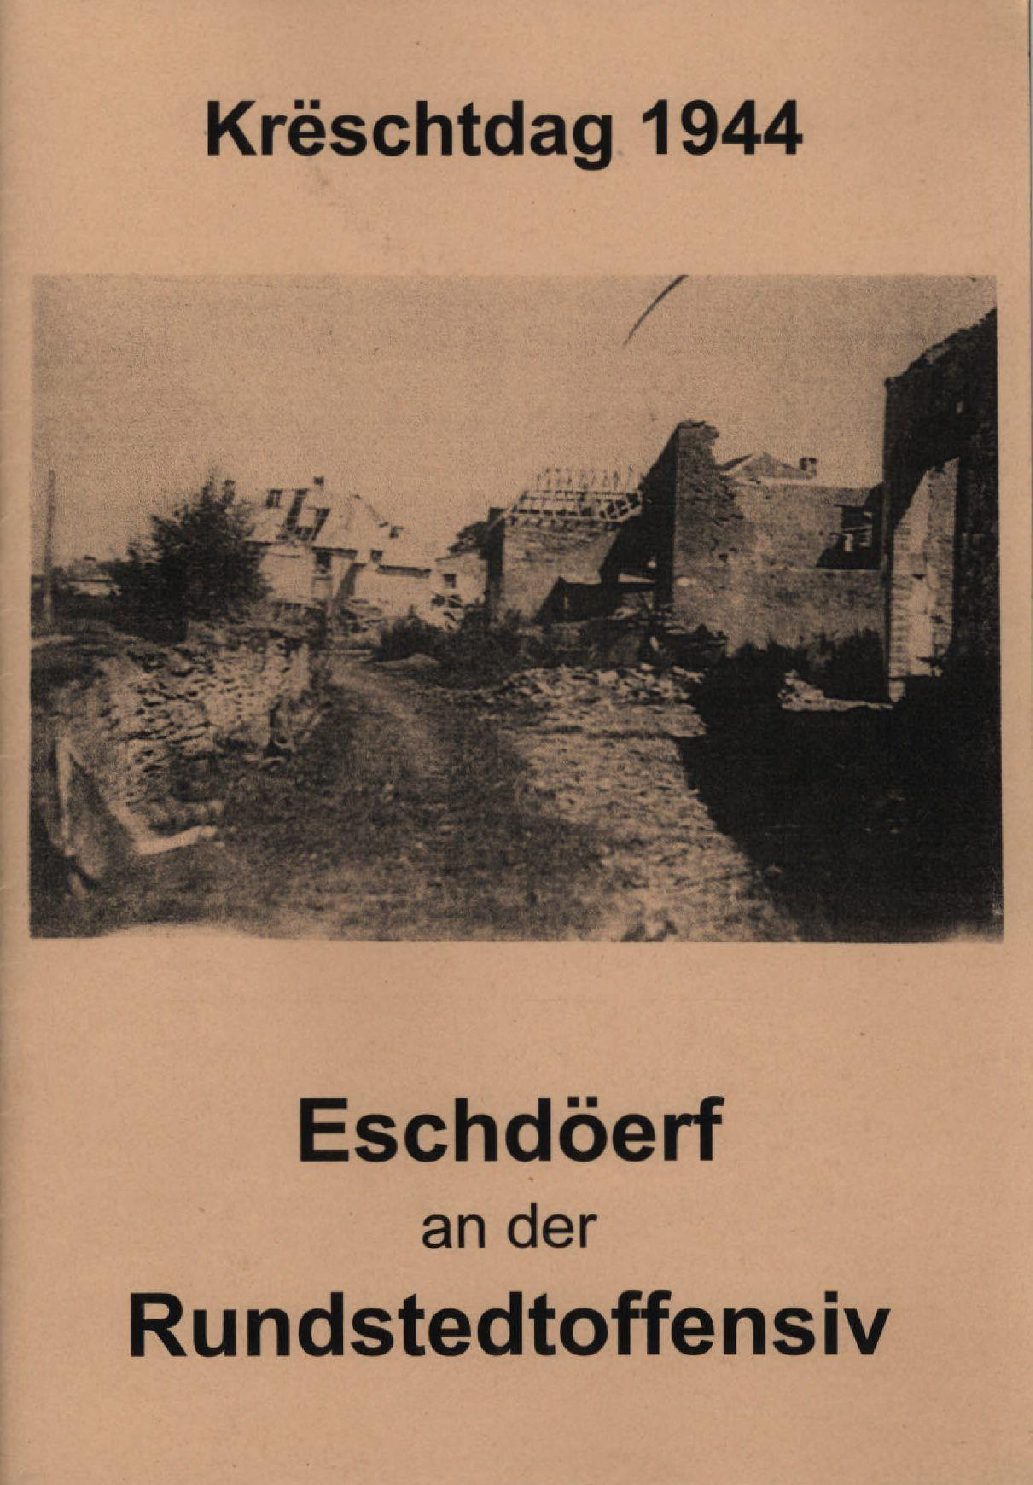 20,5_Special_Krëschtdag 1944